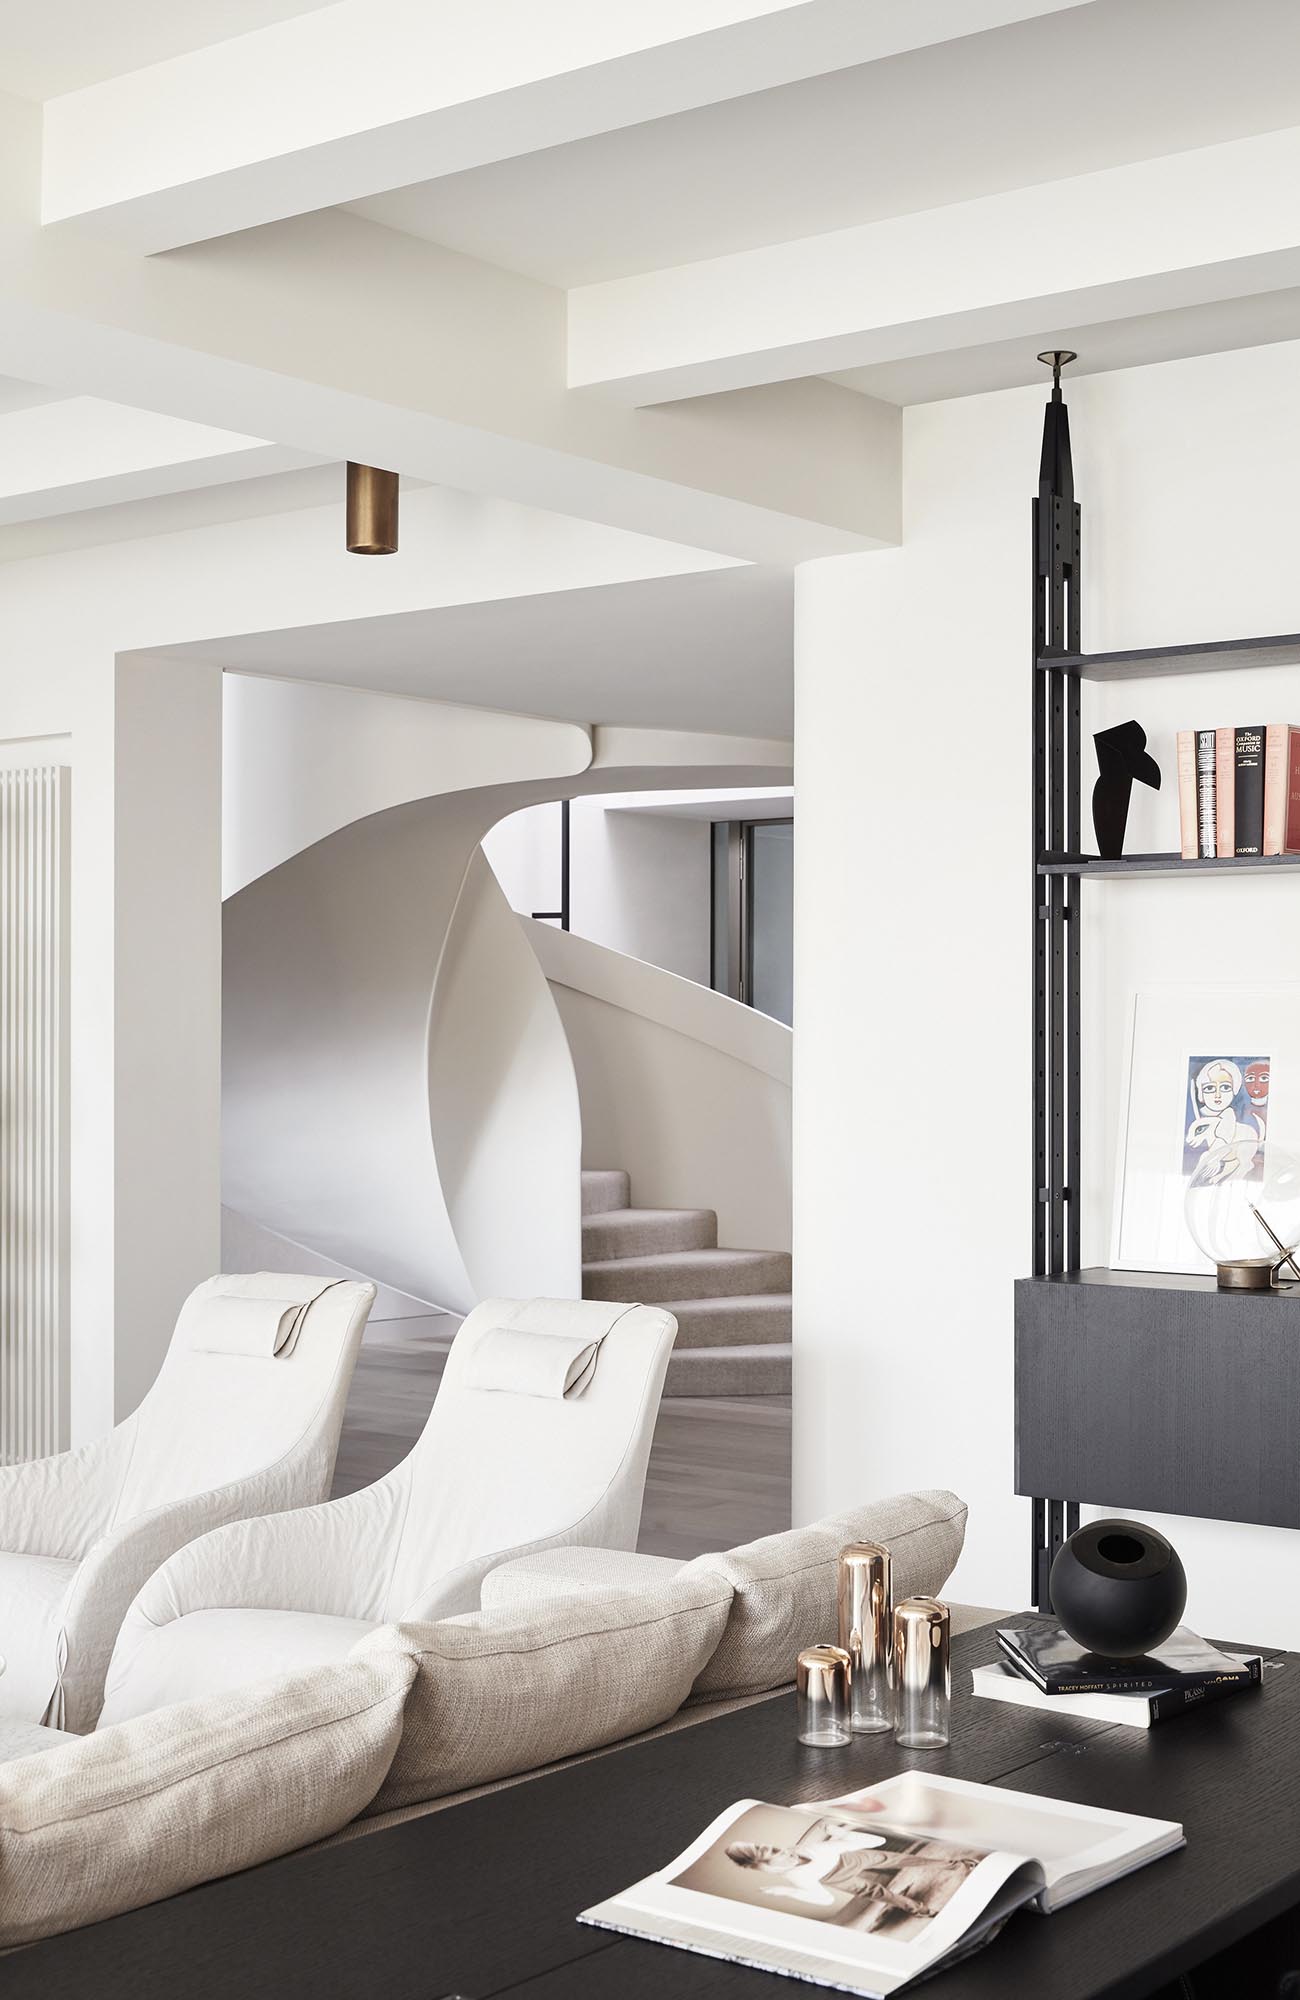 Современный интерьер с яркой мебелью и белой винтовой лестницей.